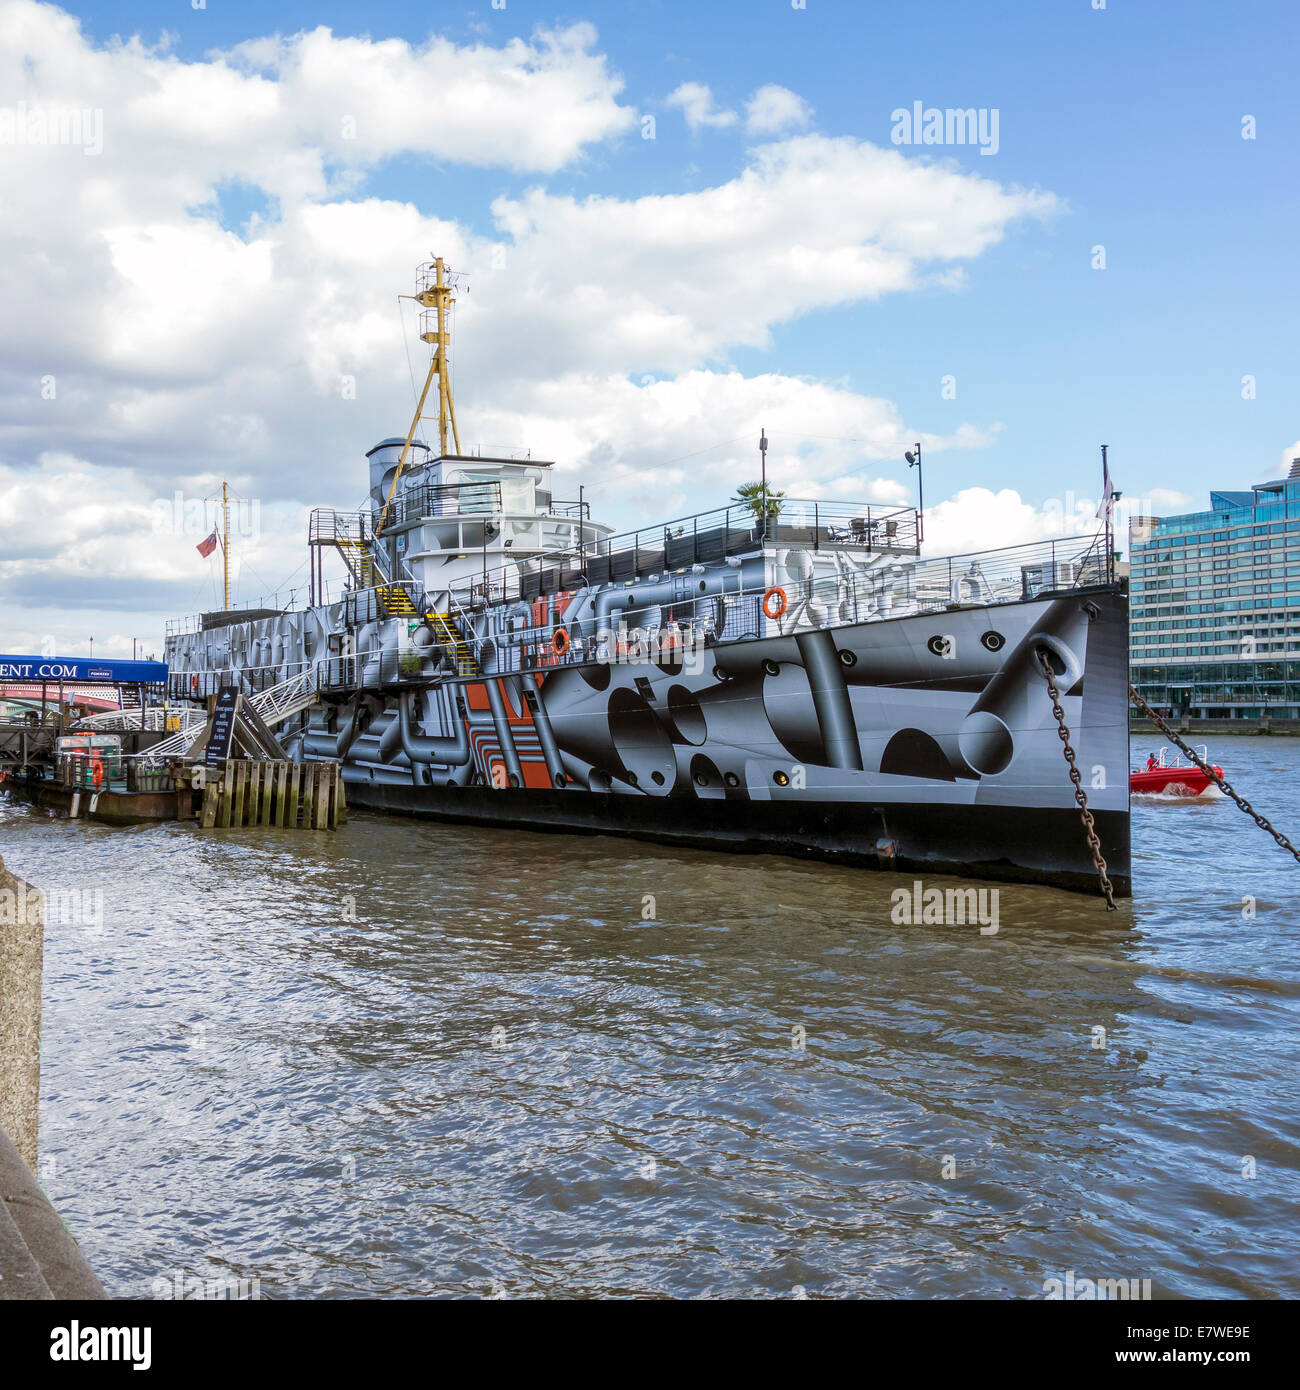 Dazzle Ship WW1 Commission d'Art par Tobias Rehberger sur le RiverThames Londres Banque D'Images